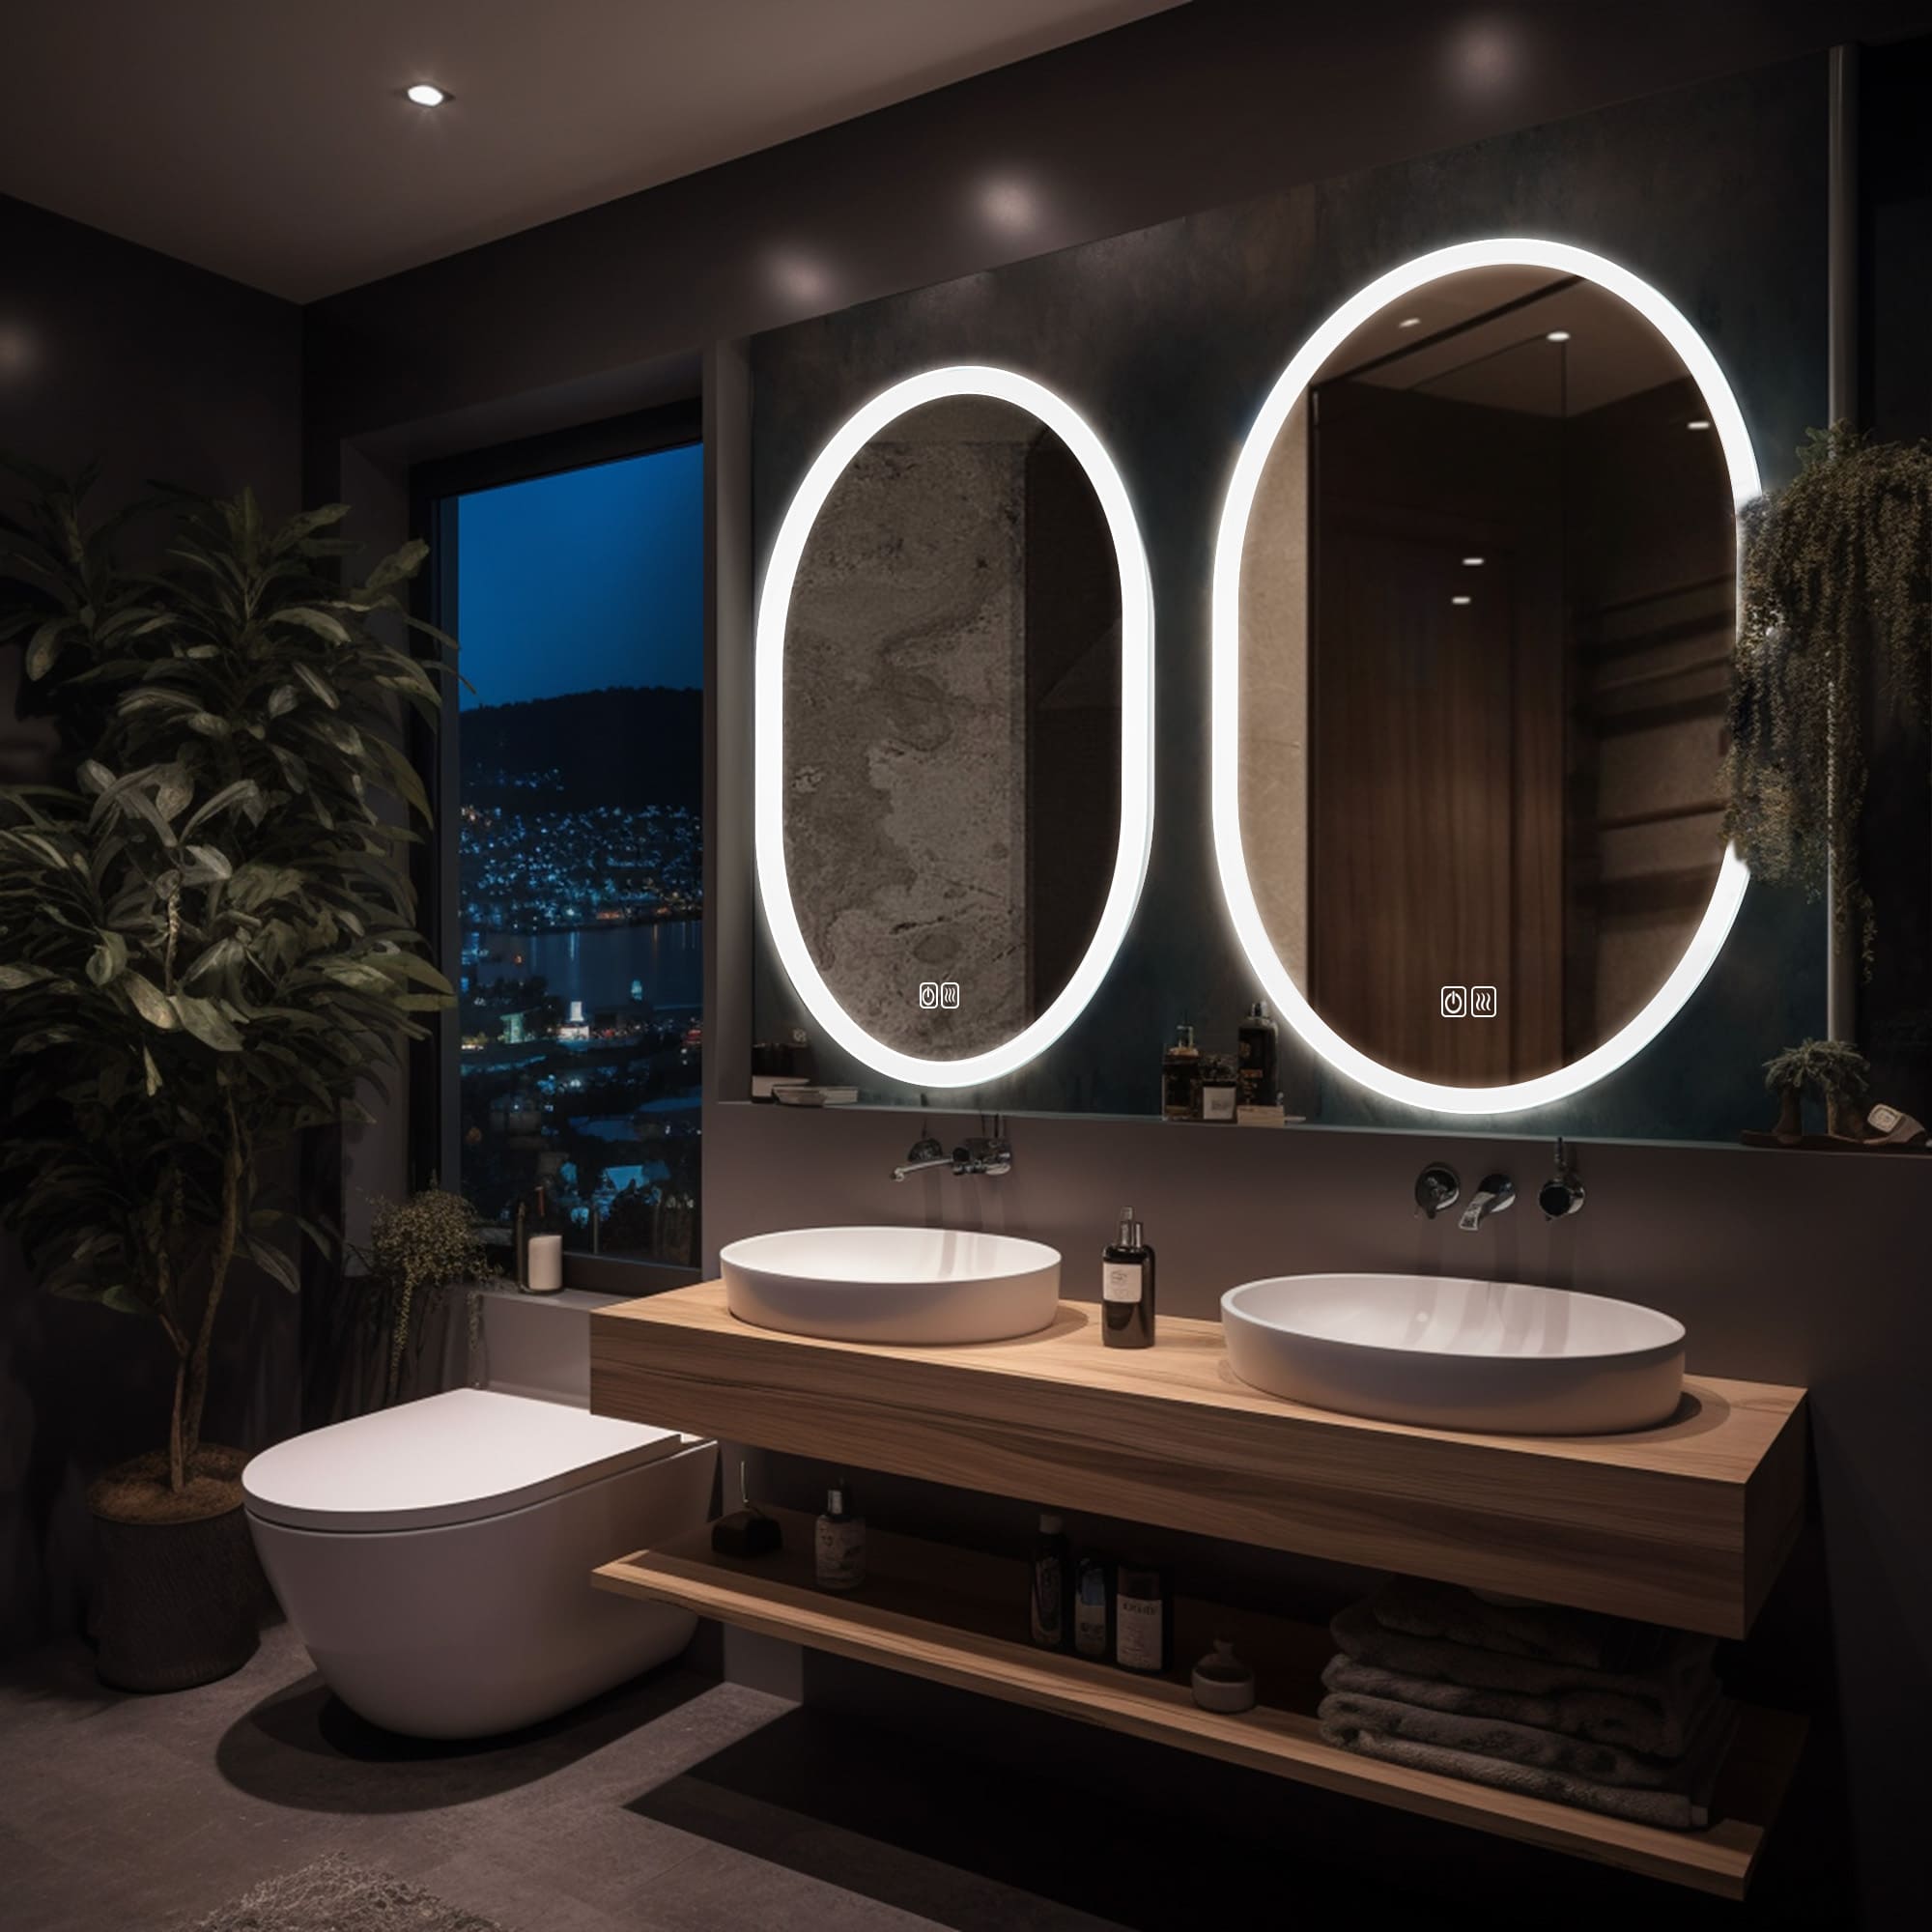 Haumea LED Mirror for bathroom